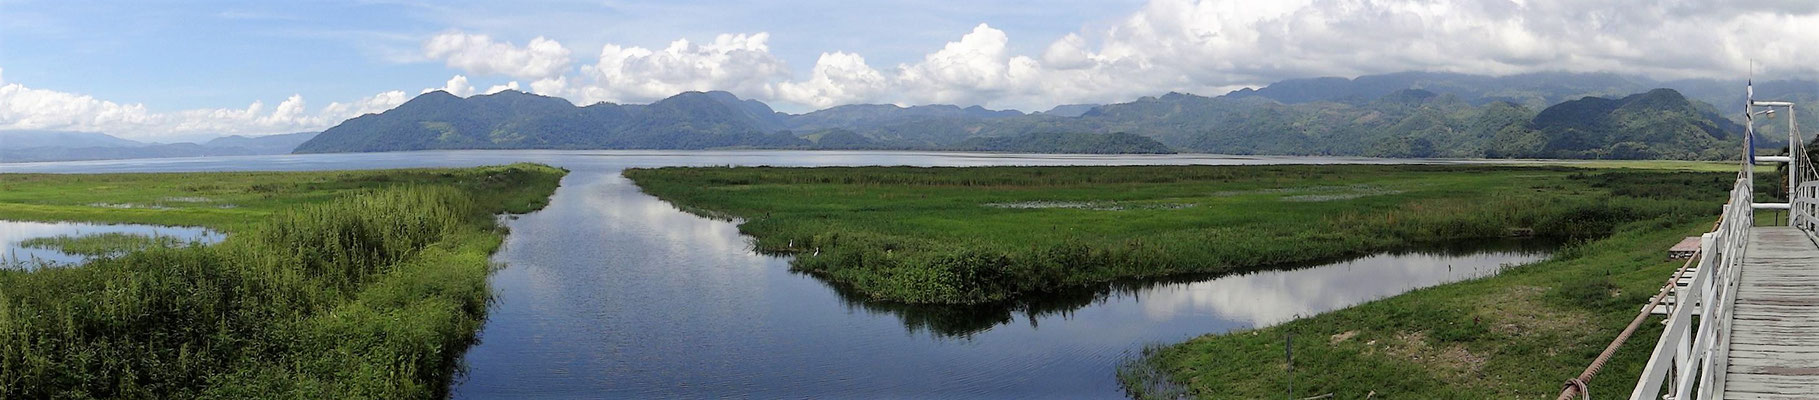 Lago Yoyoba